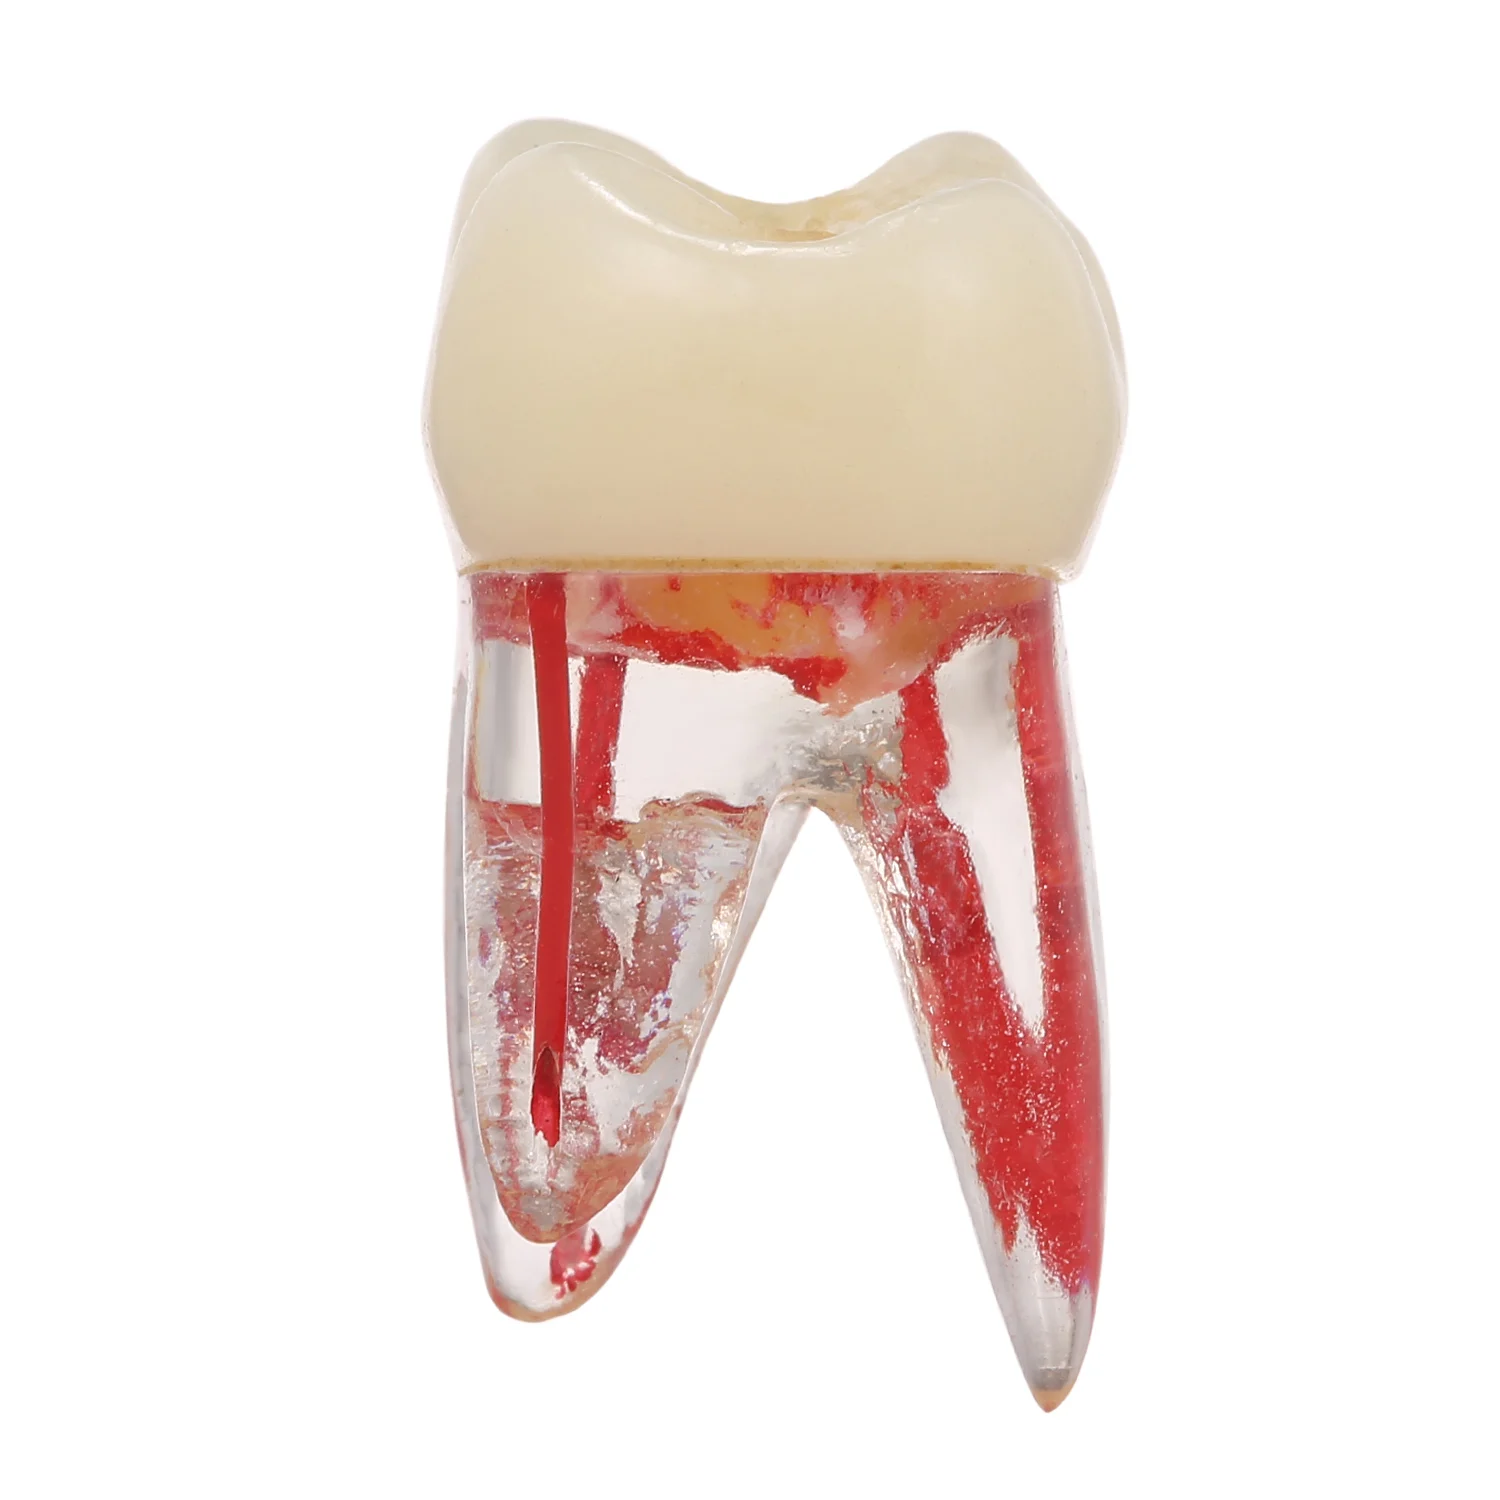 1:1 смоляная Стоматологическая эндодонтическая Студенческая Учебная модель с цветным корневым каналом и целлюлозно-прозрачной